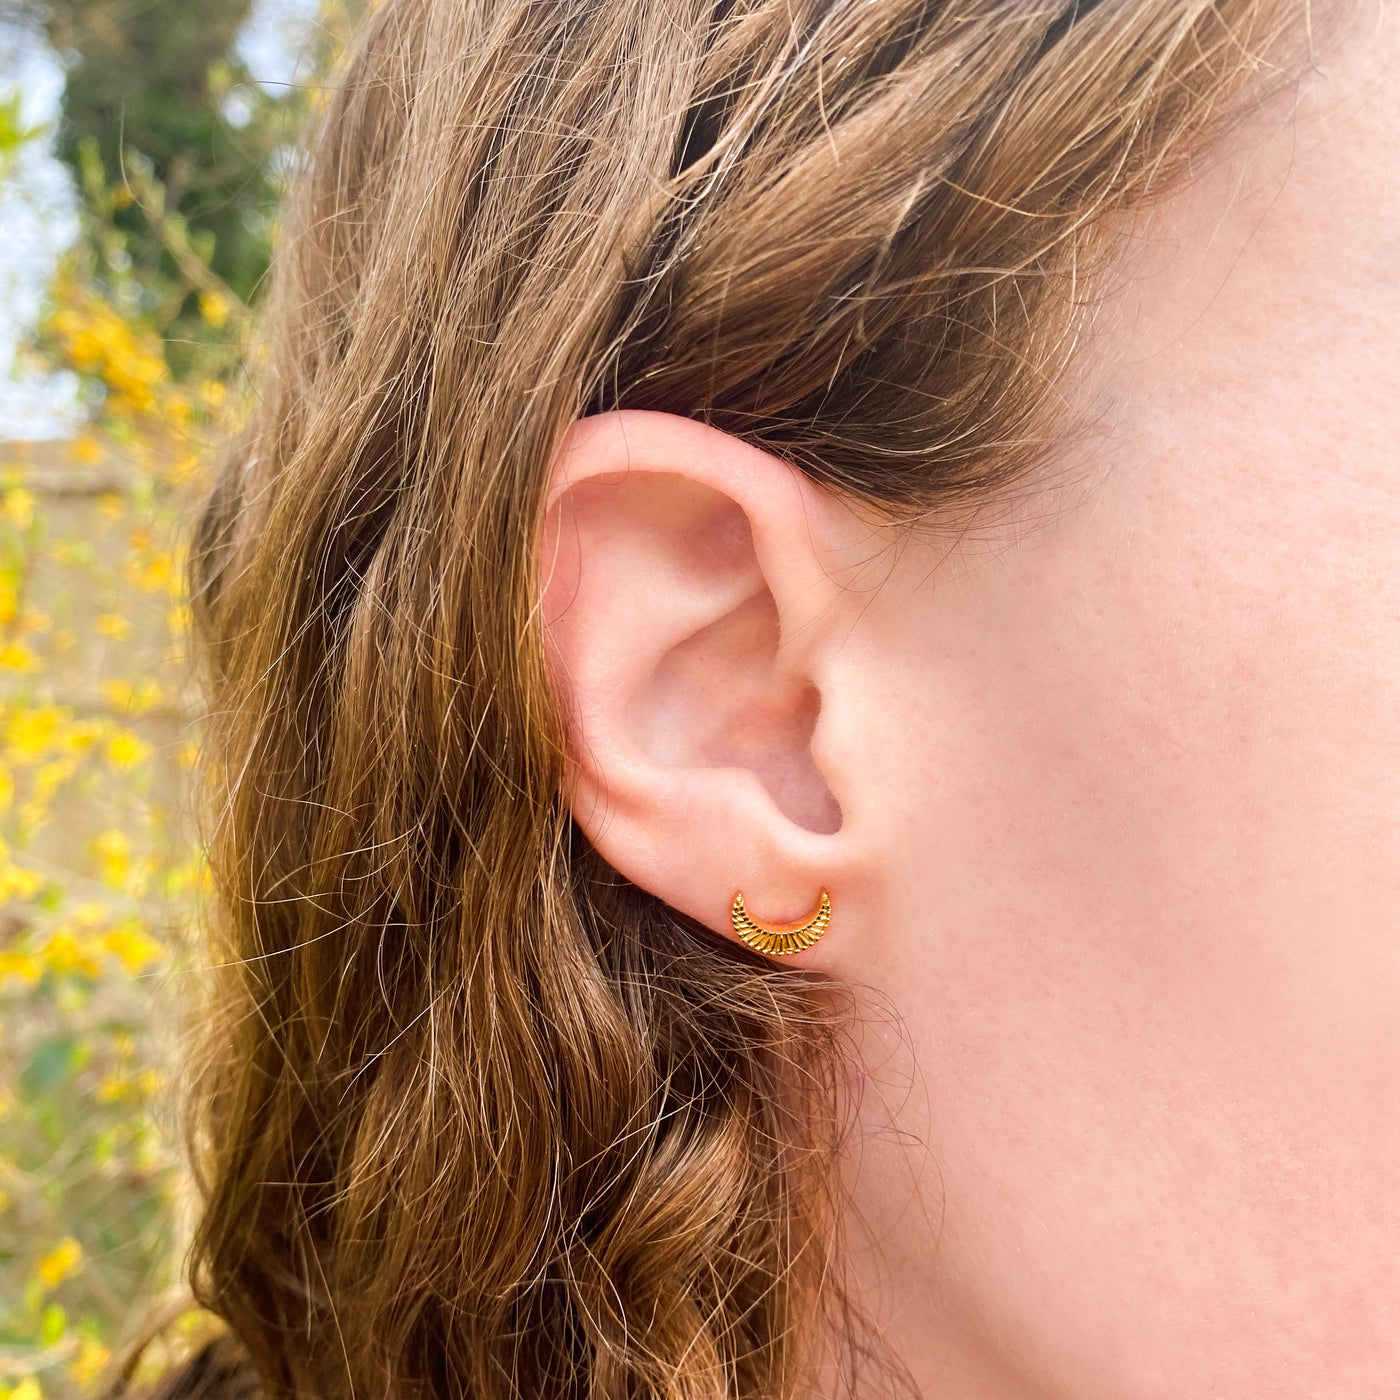 Gold engraved moon stud earrings